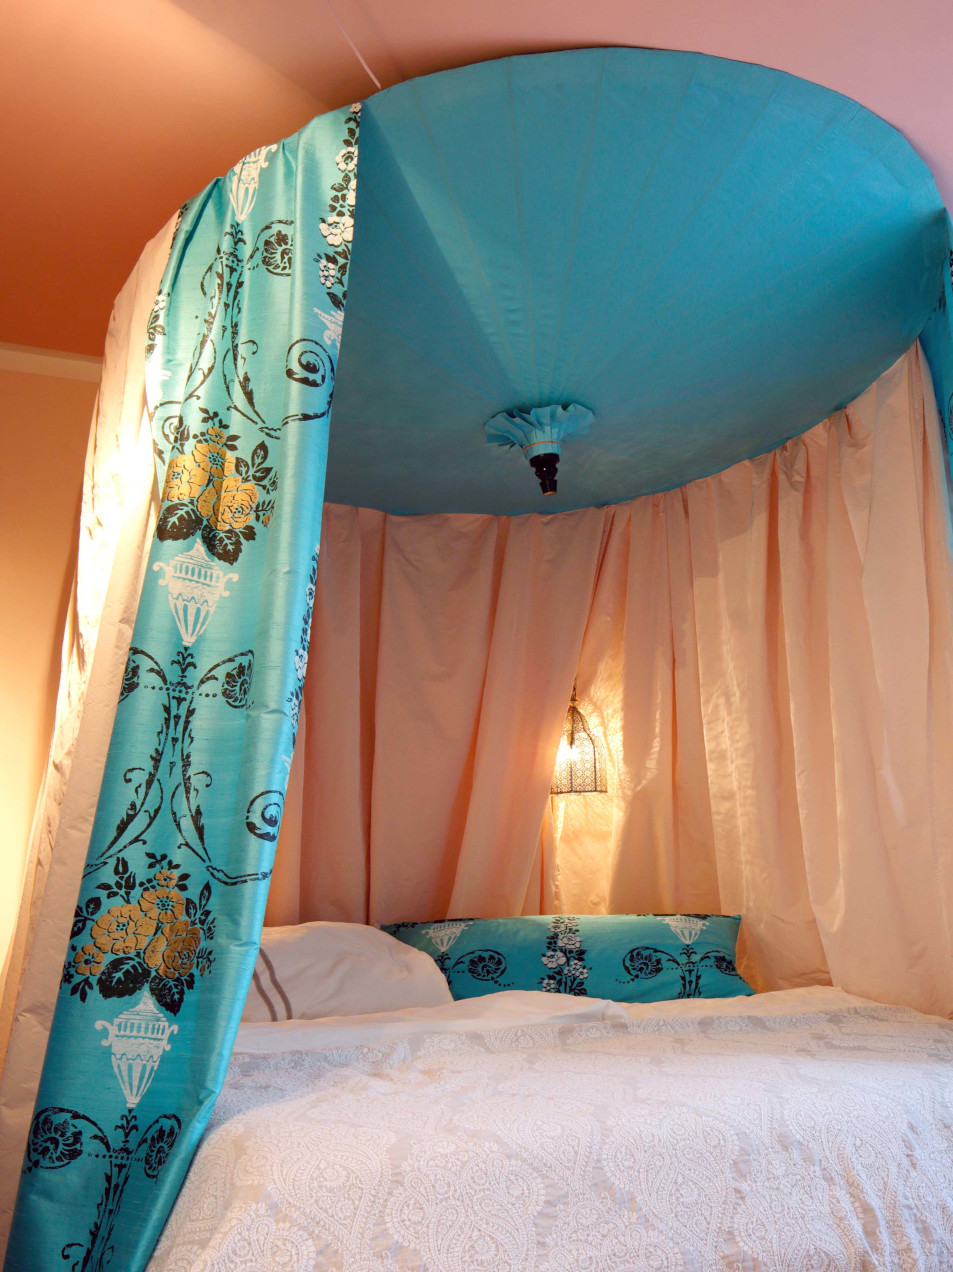 Bett mit hängendem Baldachin aus zwei verschiedenen Stoffen in Hellblau mit goldenen Blüten und Pastellorange.